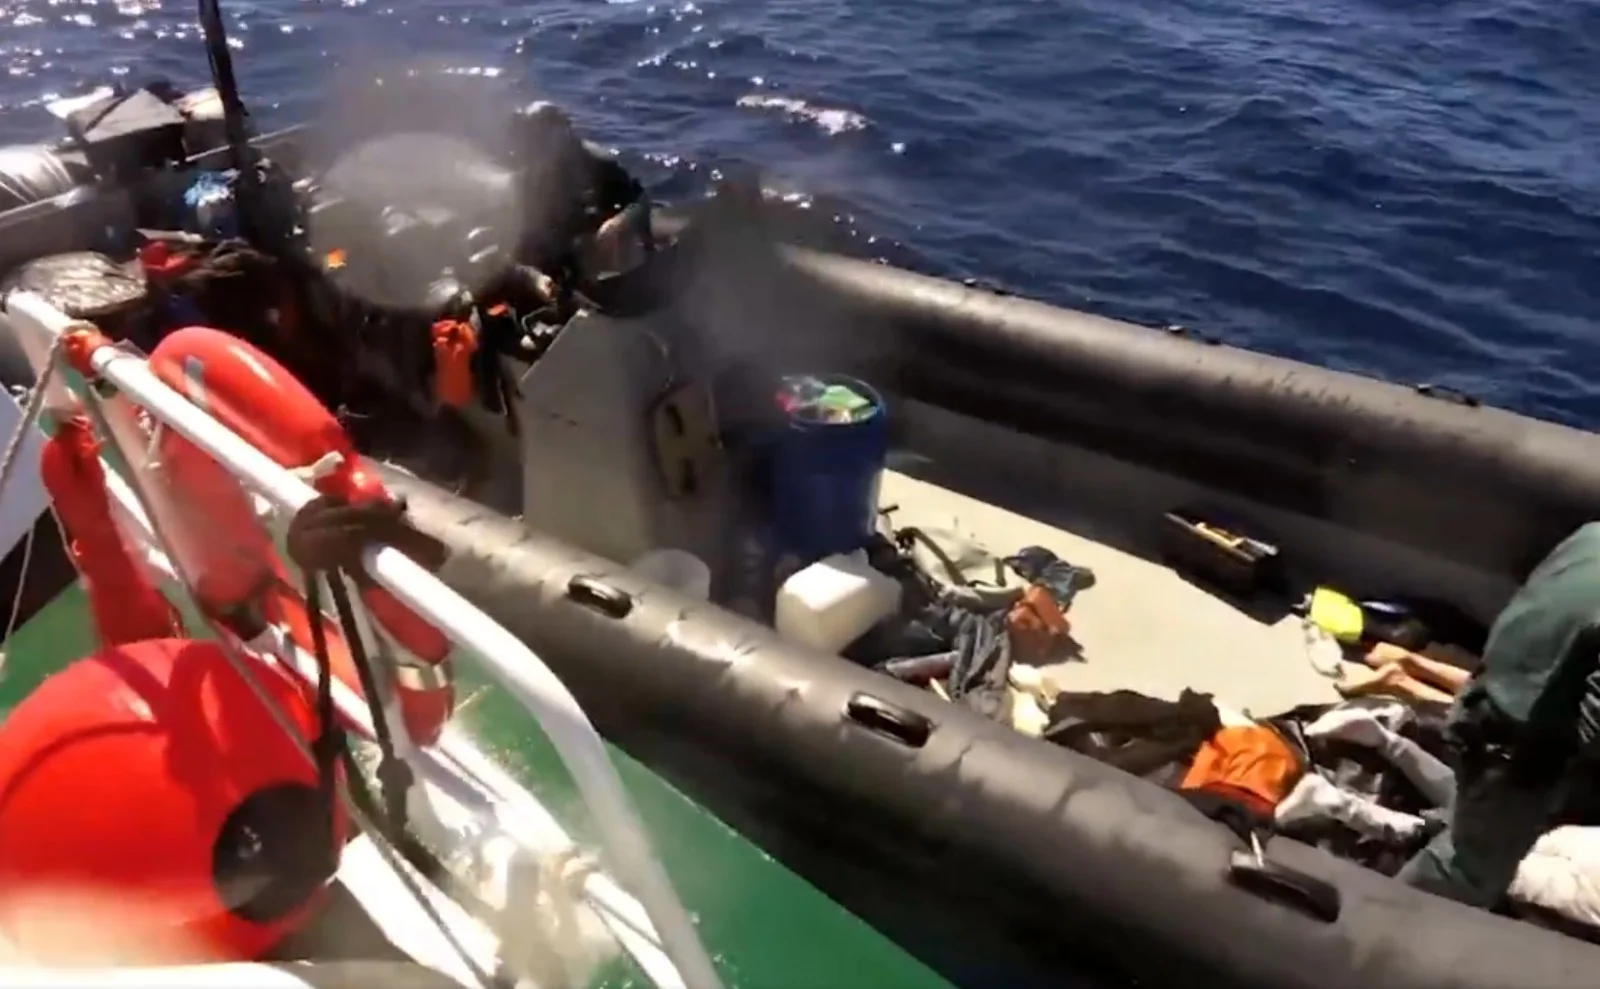 Incautación de 11.400 kg de hachís en las costas de Huelva: 7 detenidos y 6 embarcaciones intervenidas